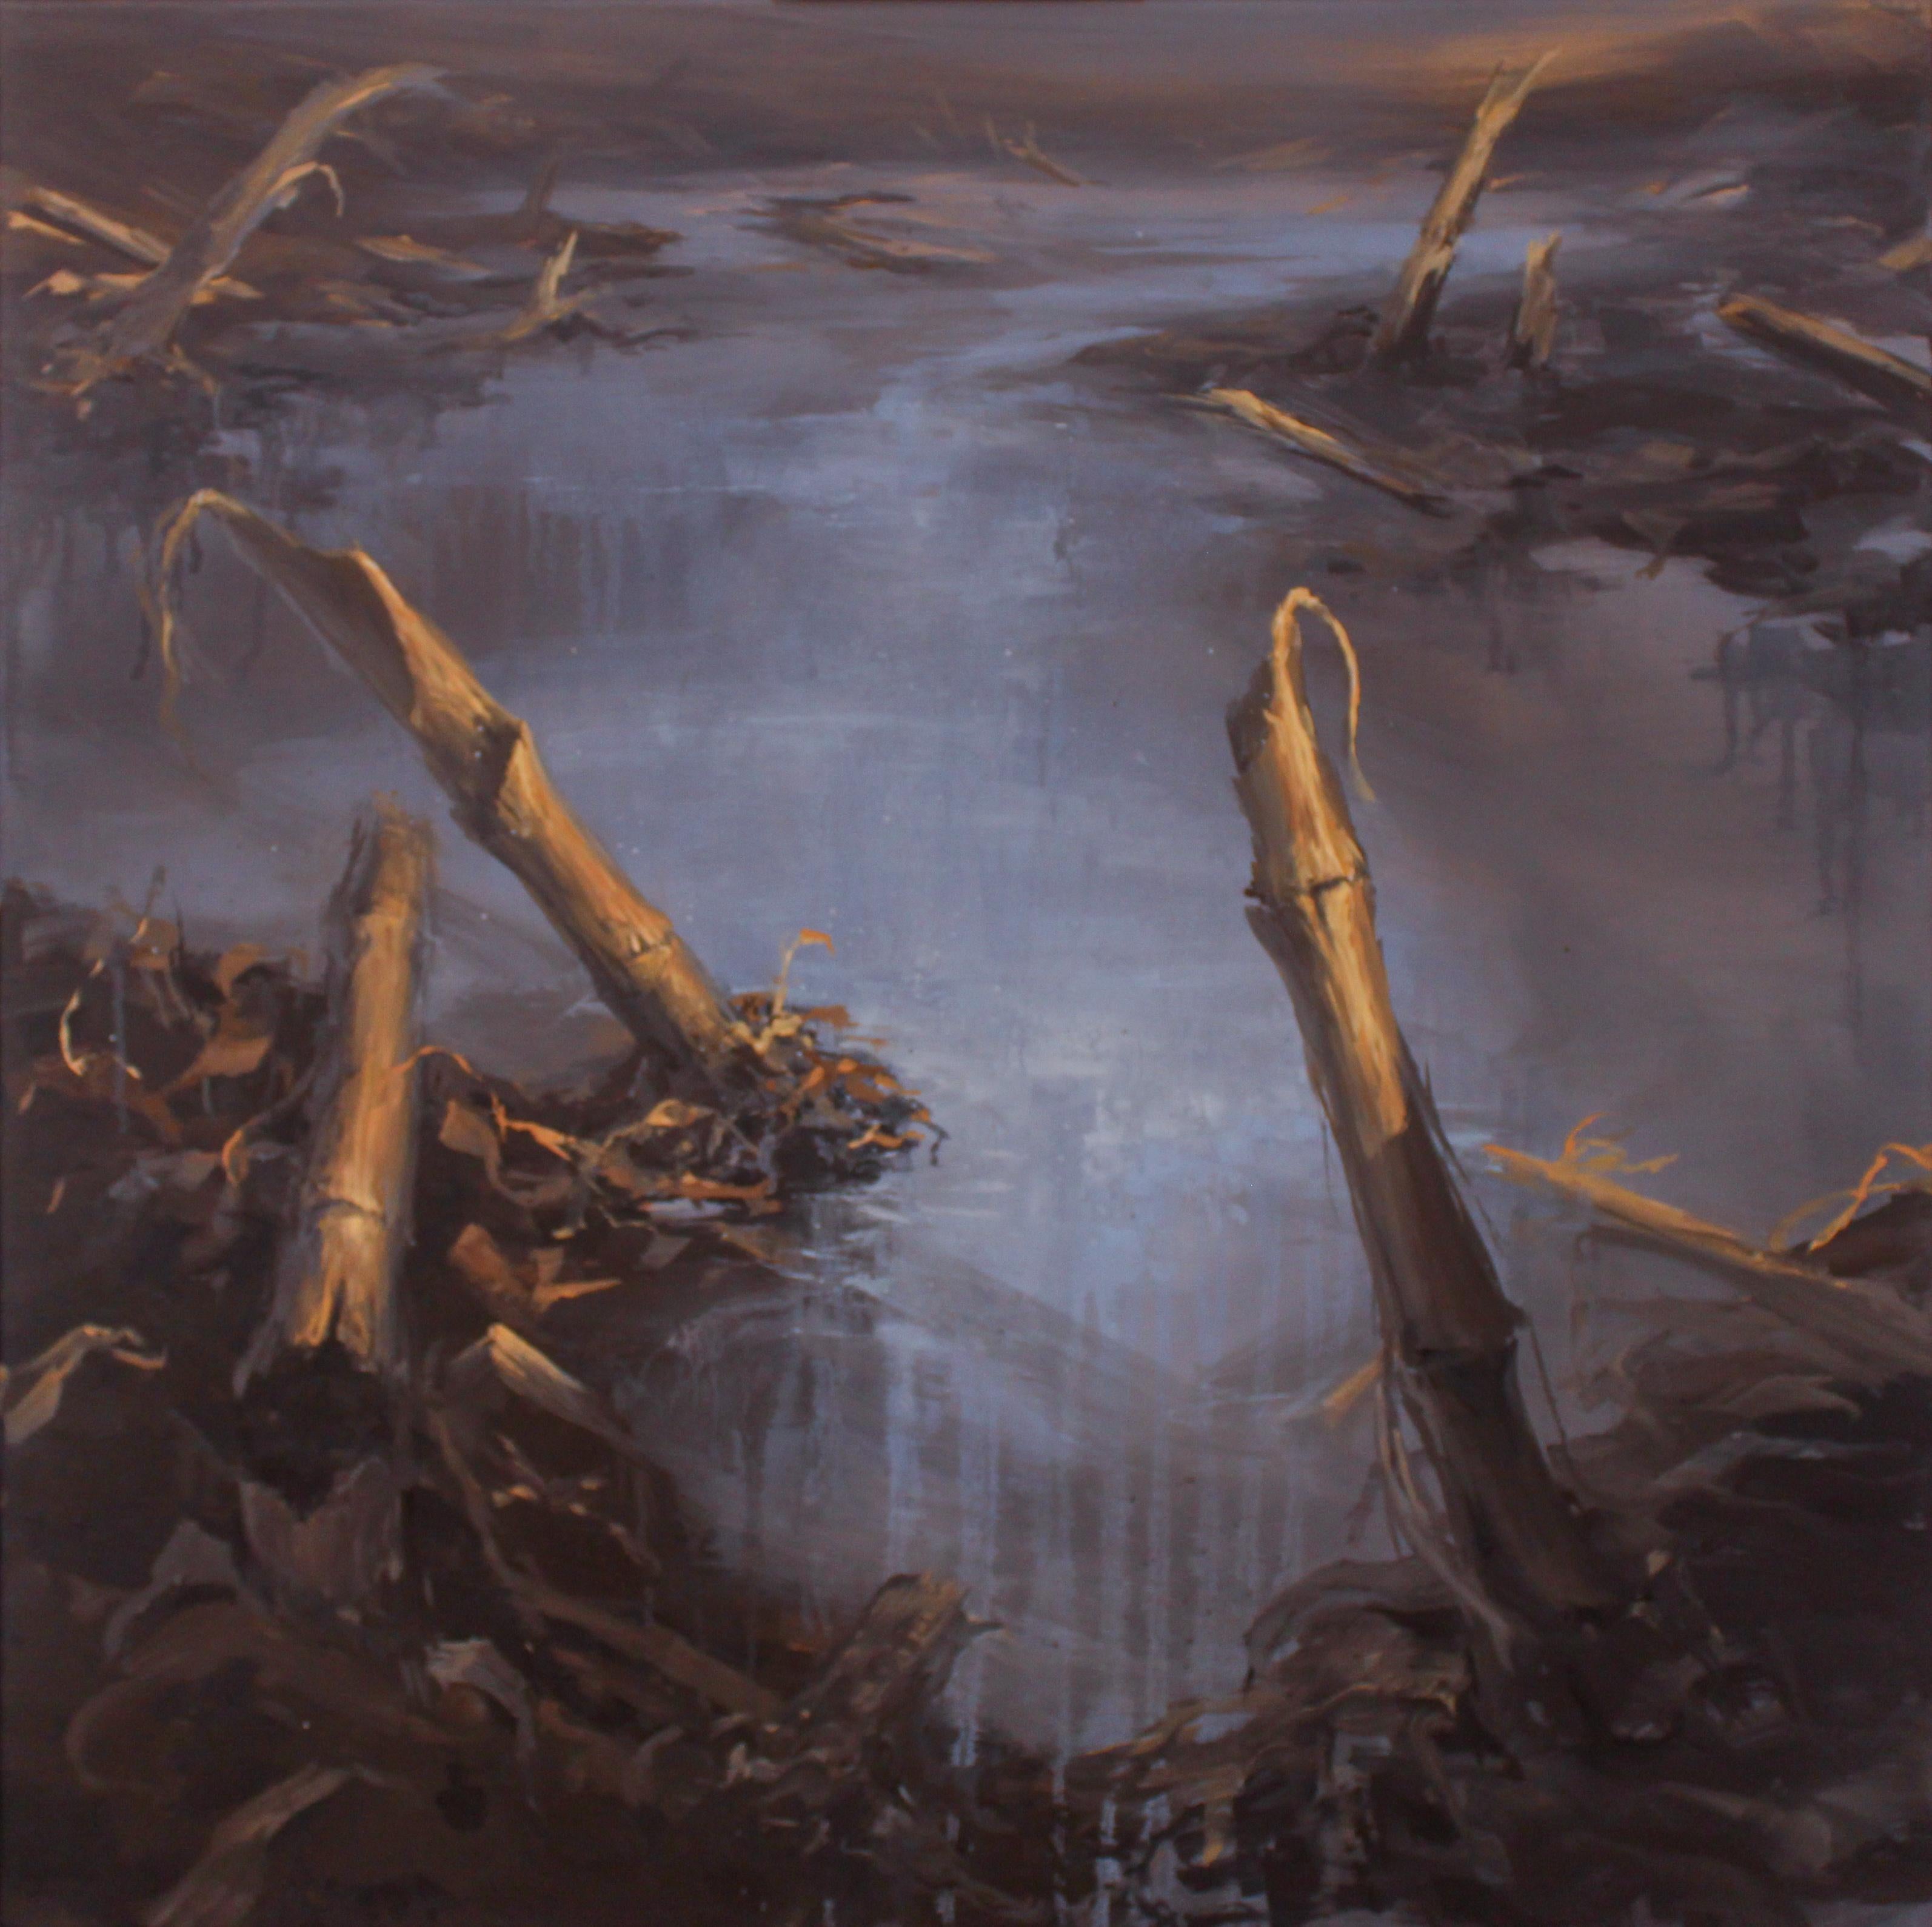 Marein Konijn Landscape Painting - Corn Stubbles - 21st Century Contemporary Oil Painting of a Cornfield Landscape